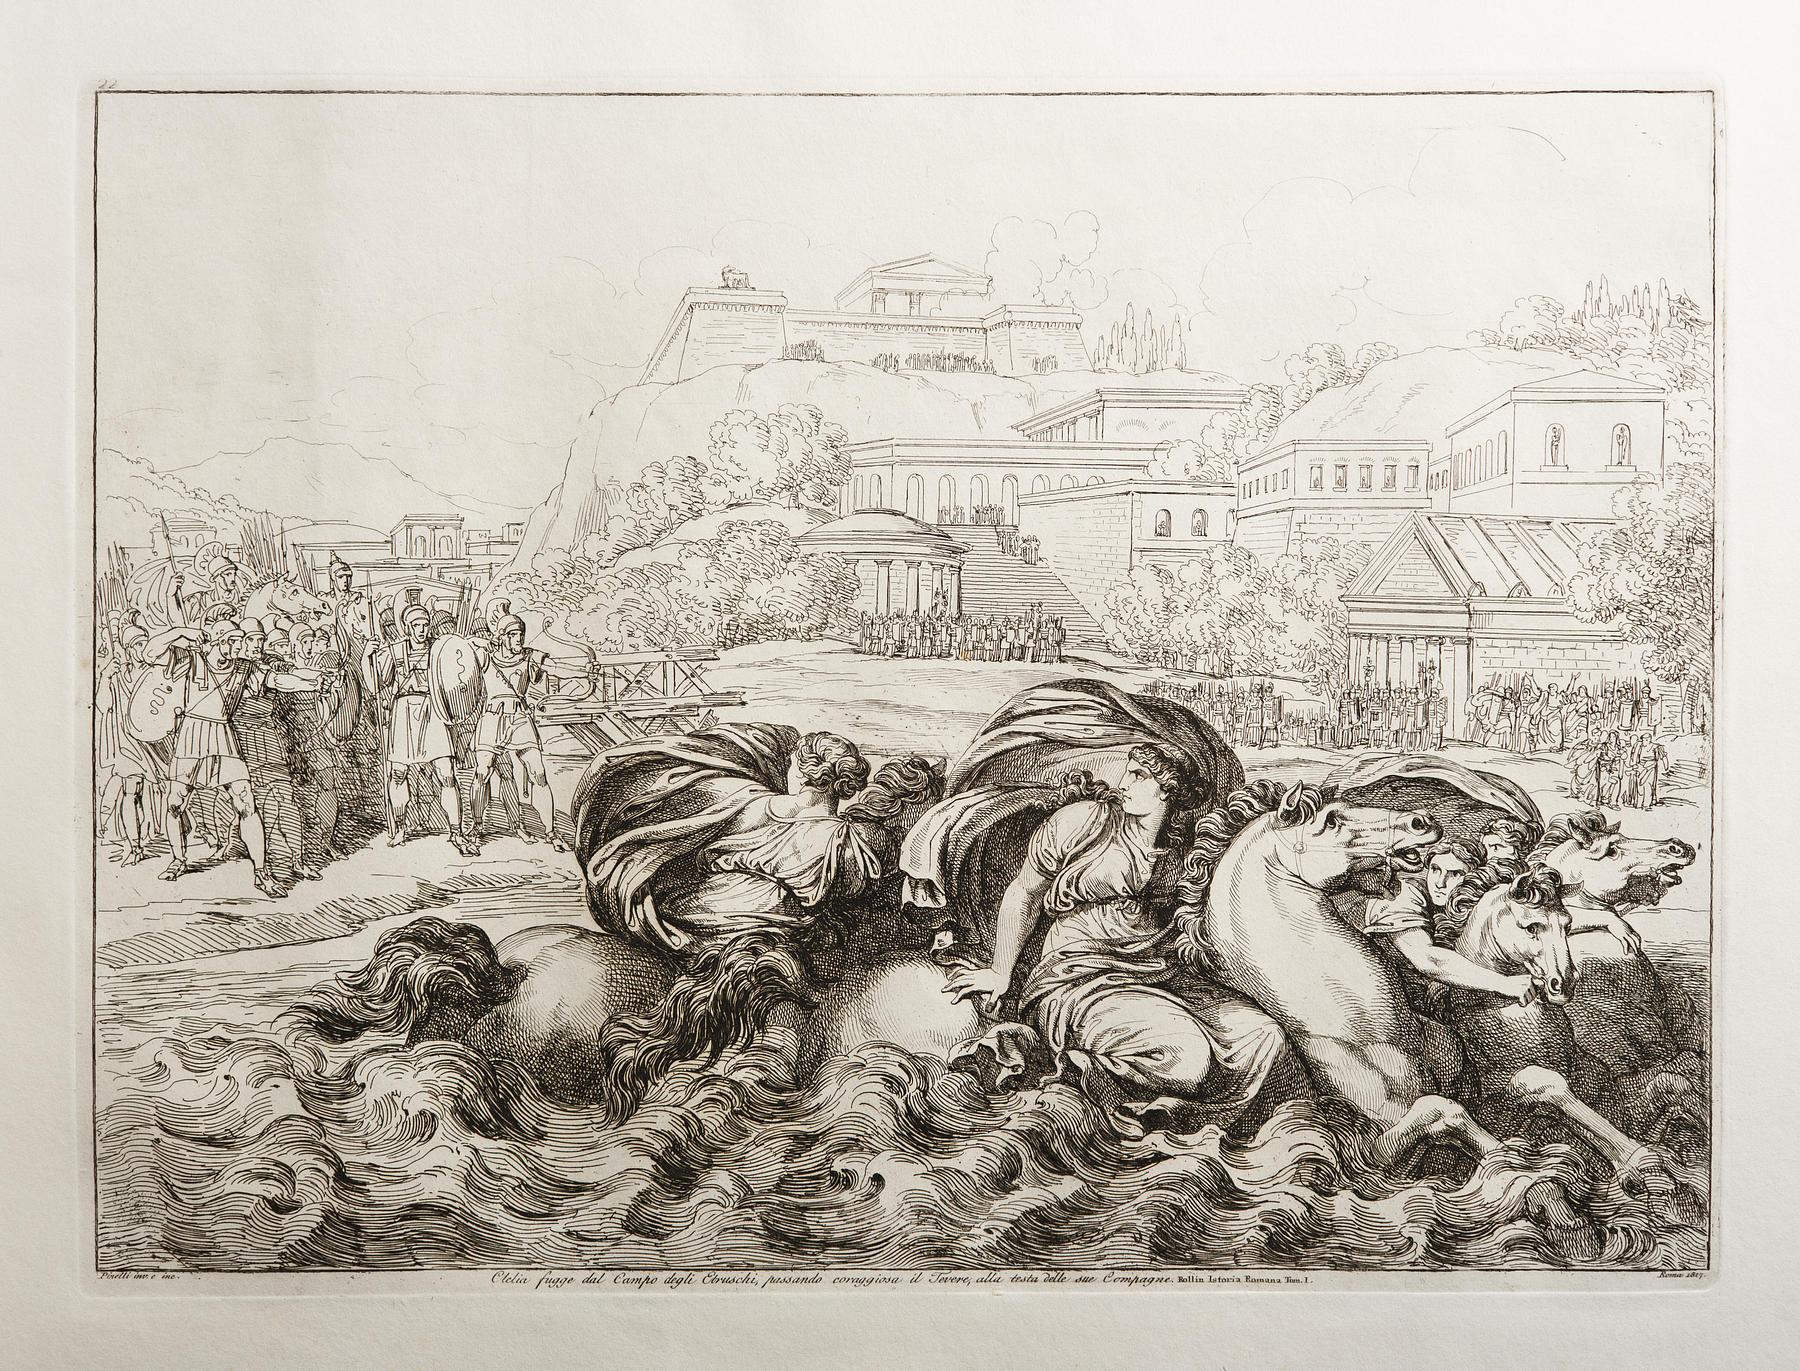 Clelia fugge dal Campo degli Etruschi, passando coraggiosa il Tevere, alla testa delle sue Compagne, E943,25